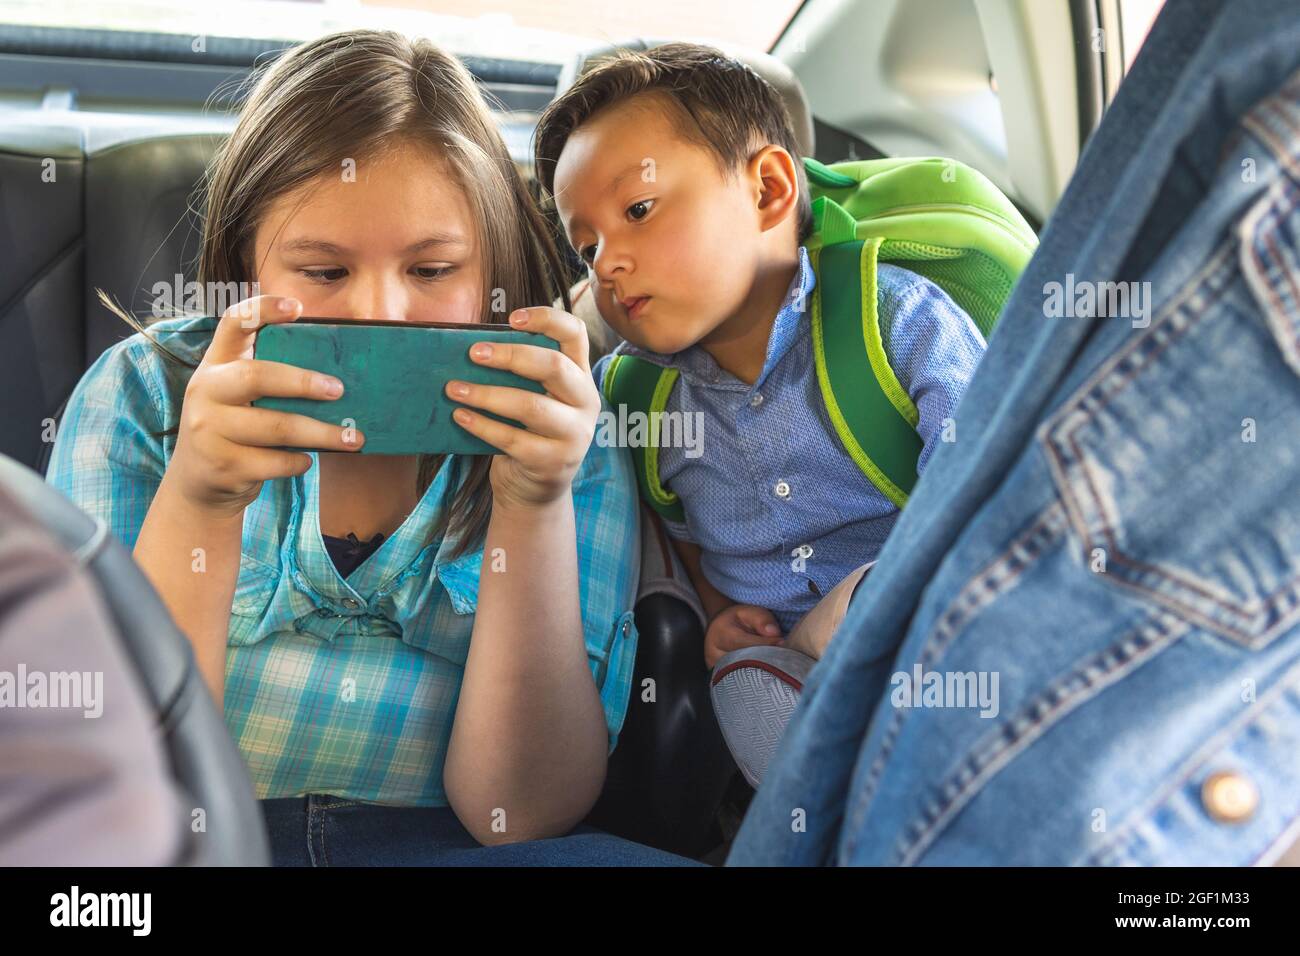 Zwei Kinder schauen auf ein Mobiltelefon auf dem Rücksitz eines Fahrzeugs Stockfoto